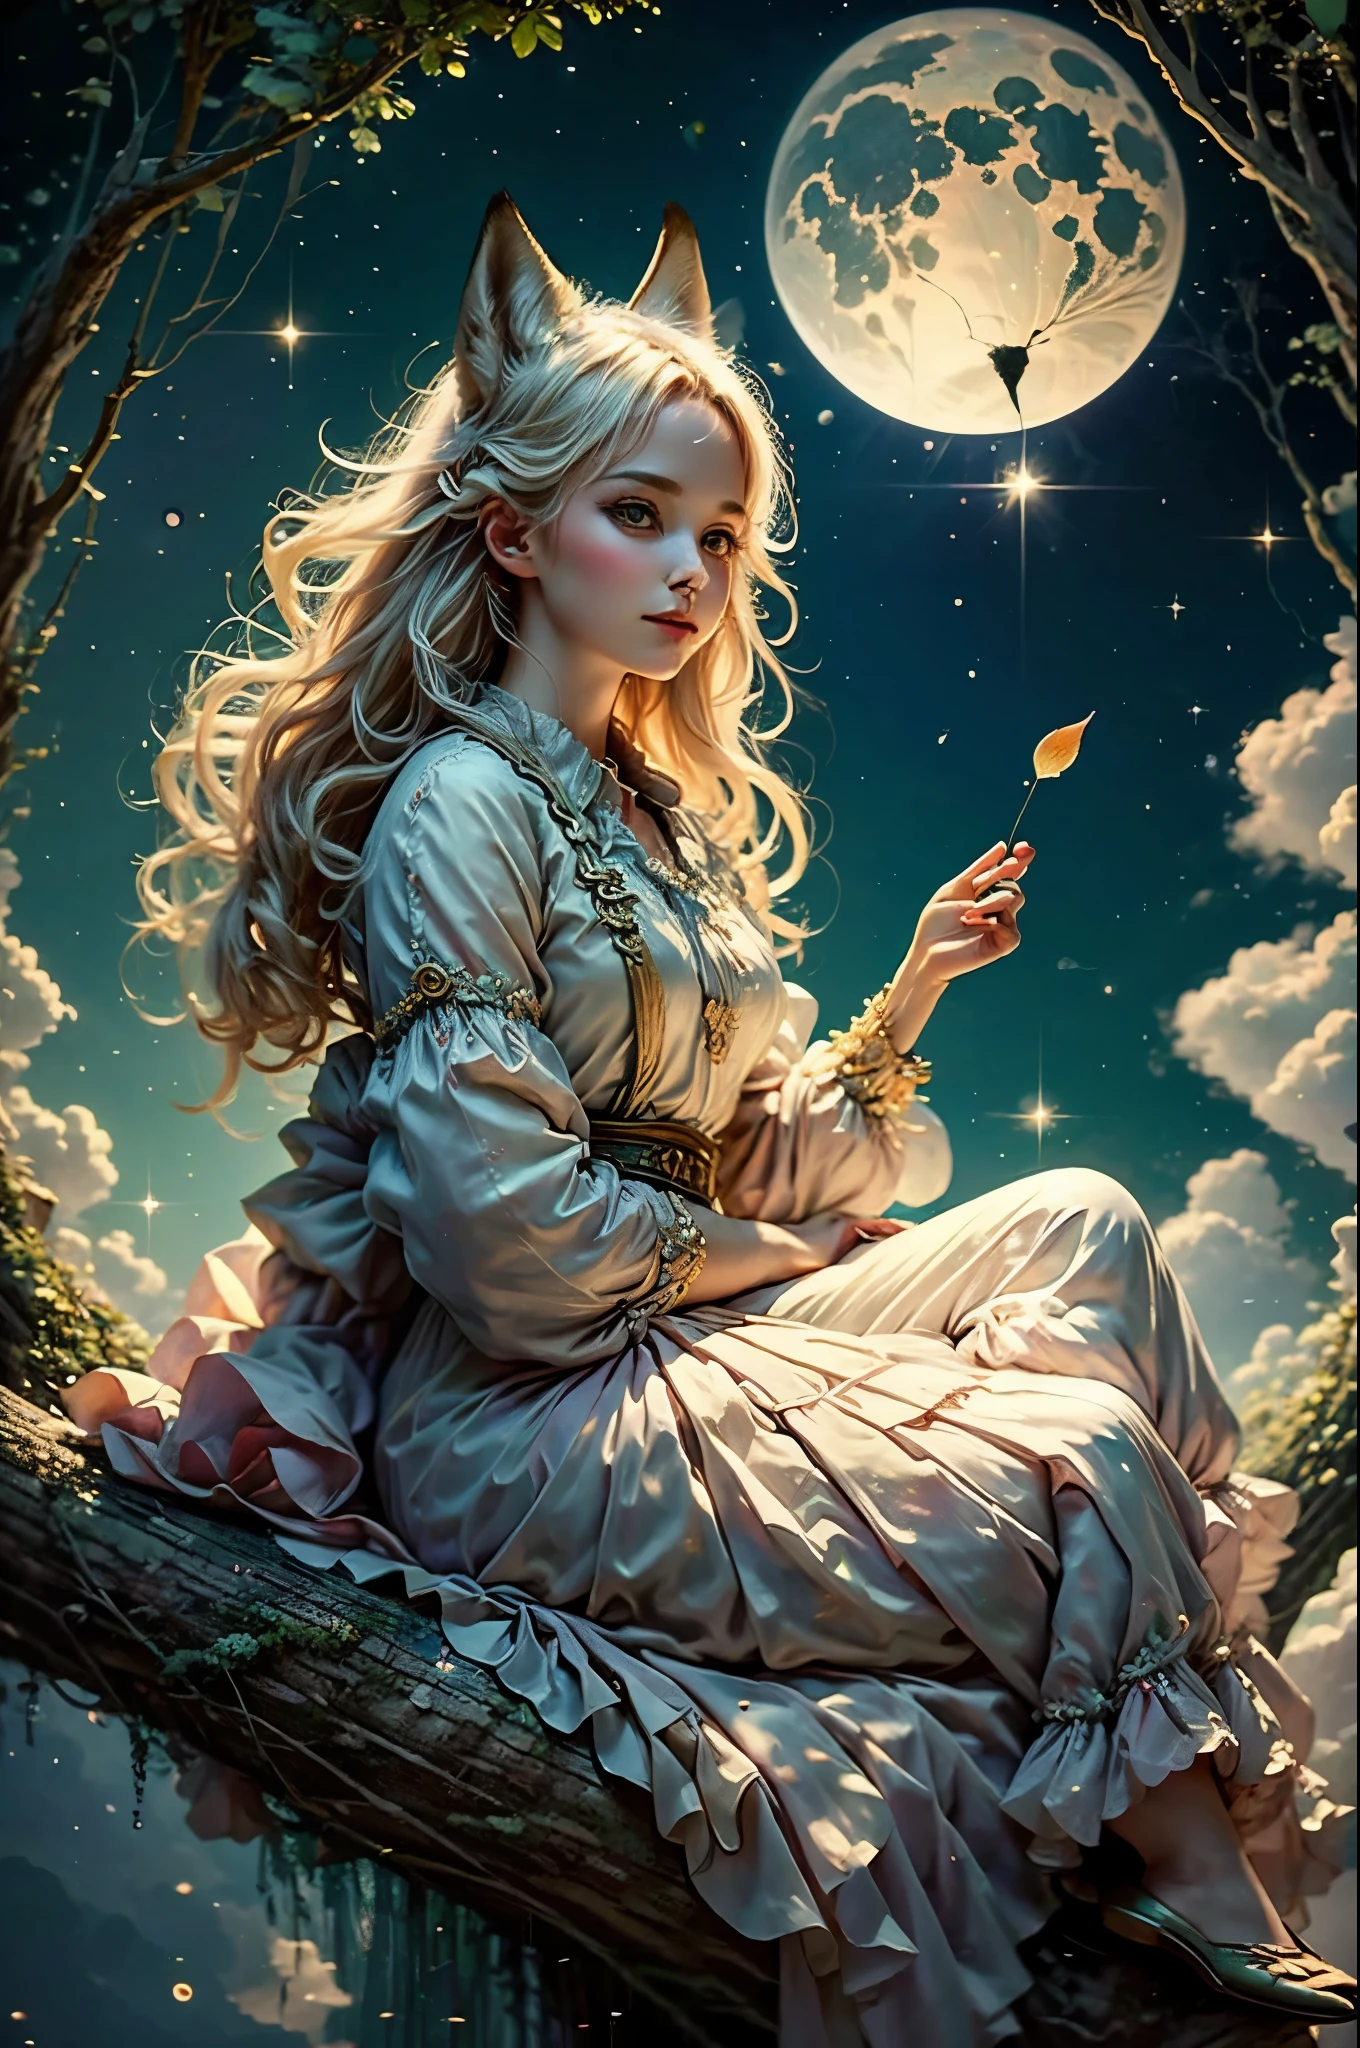 La diosa zorro, chica hermosa, Seda,nubes,cola de zorro, Traje de Mikko, bosque,Pond,( bokeh ),fantasía00d,Luna sentada